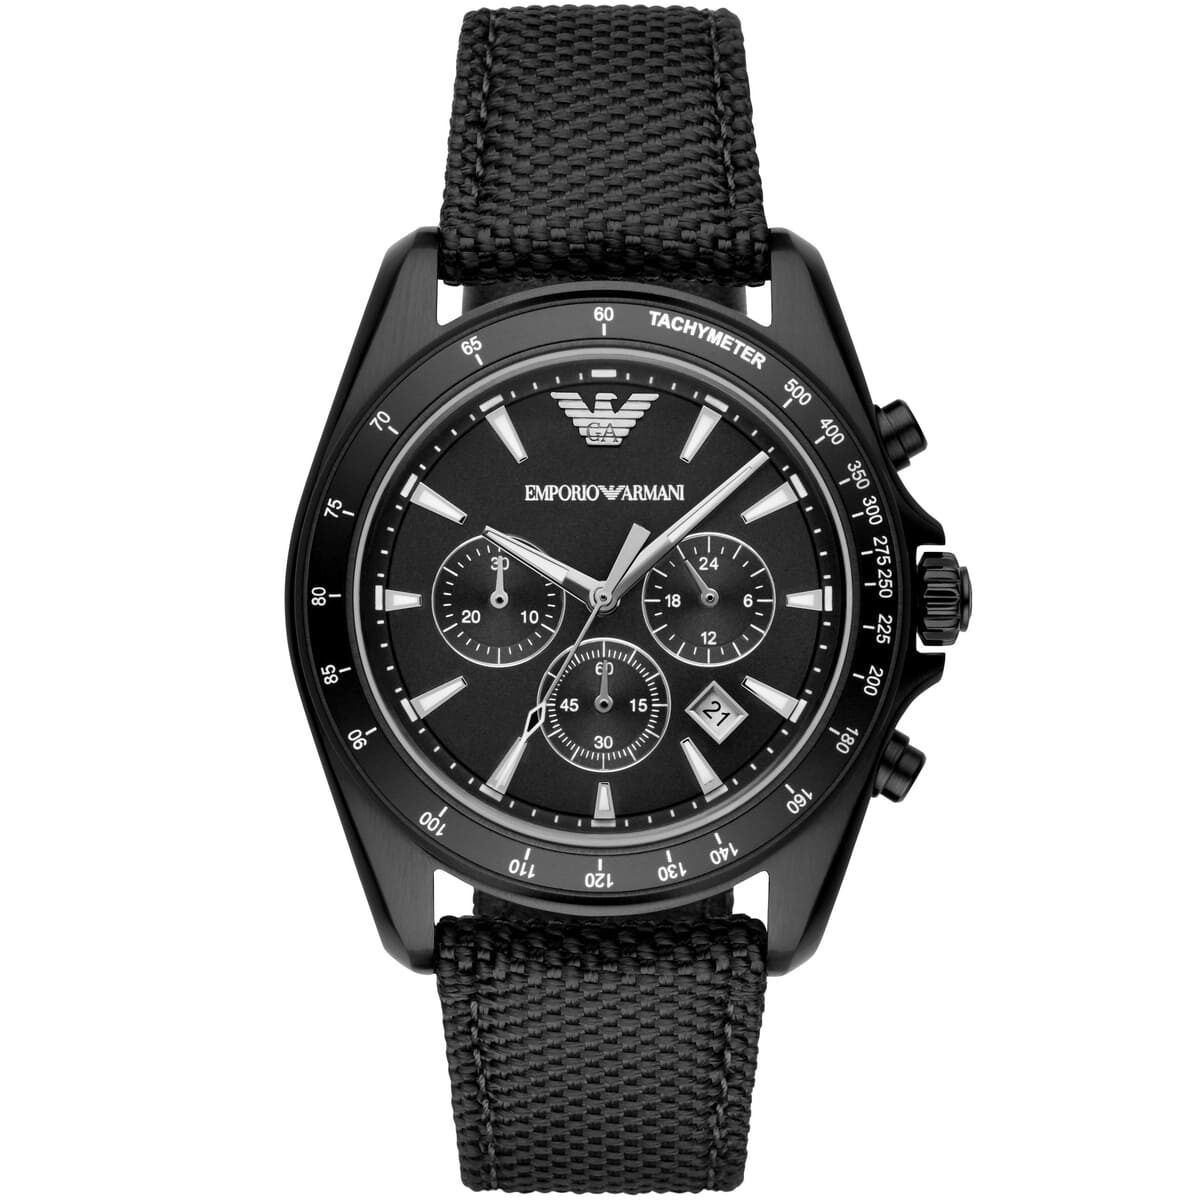 ar6131-emporio-armani-watch-men-black-dial-fibers-strap-quartz-analog-chronograph-sigma